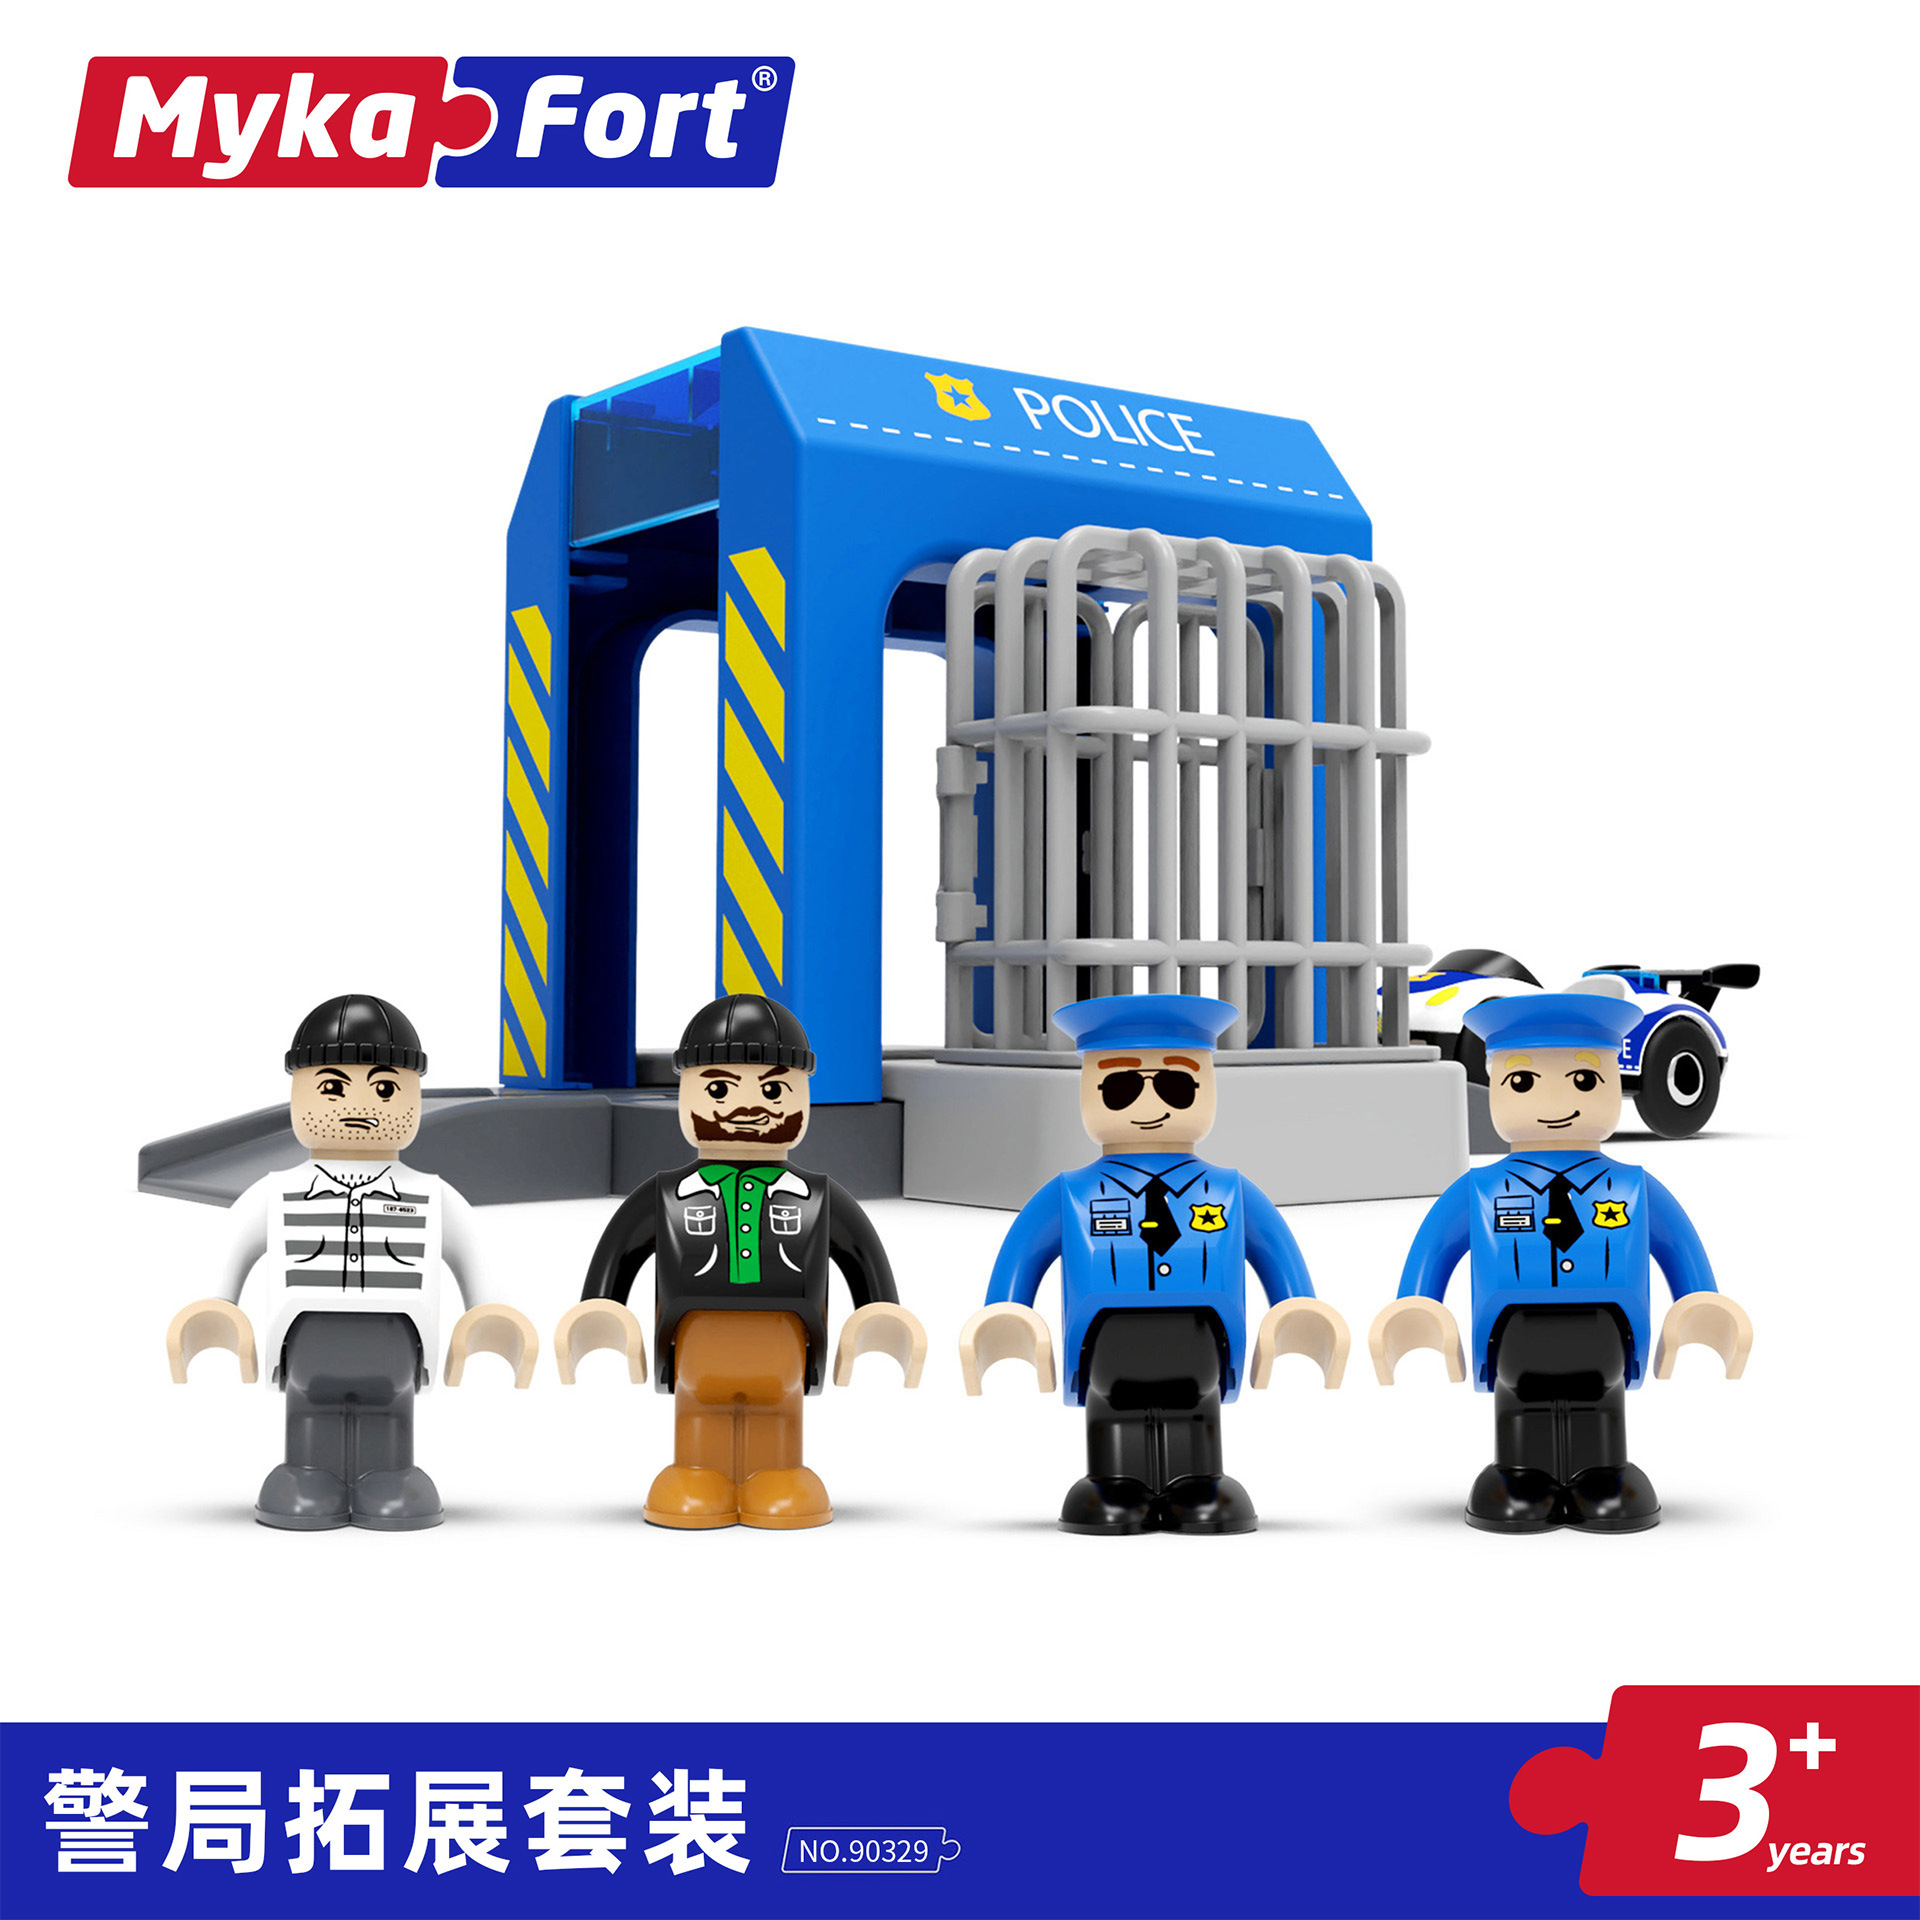 磁性警车系列拓展配件包含警察小人公仔兼容木质轨道玩具